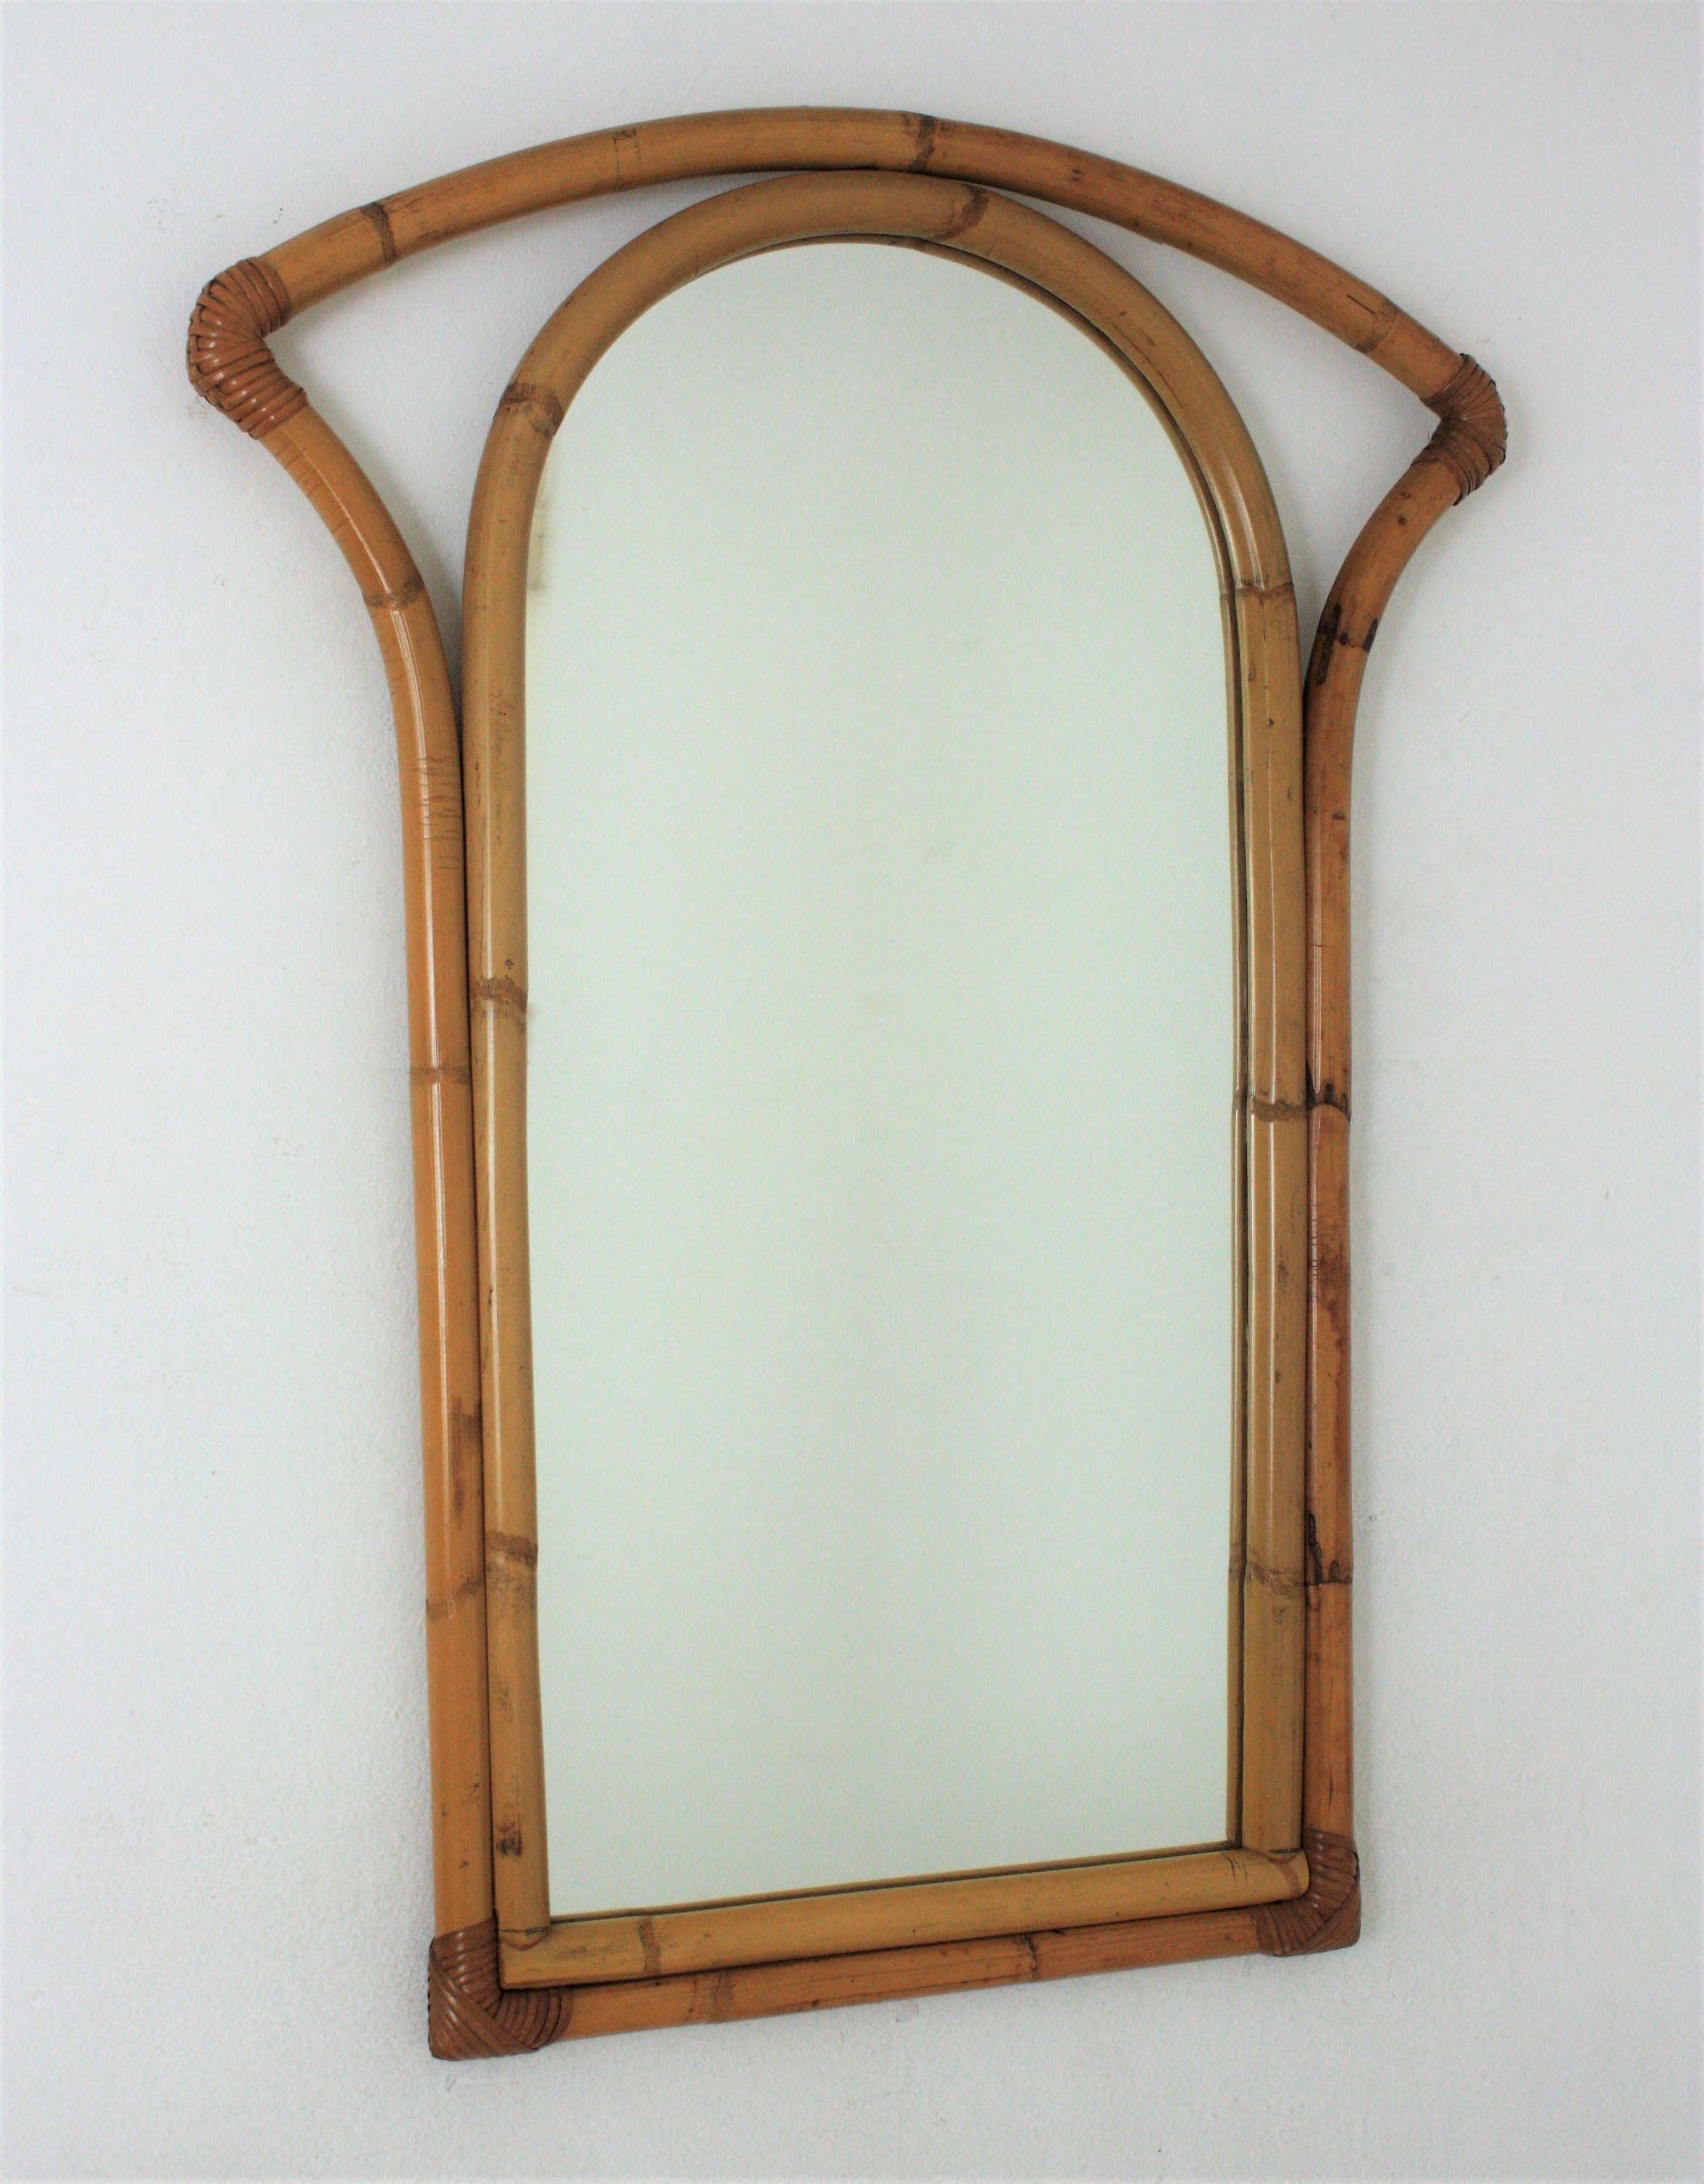 Rechteckiger Wandspiegel, Bambus, Rattan
Auffälliger rechteckiger Spiegel, handgefertigt aus Bambusrohr. Spanien, 1960er Jahre.
Dieser Spiegel hat einen doppelten Bambus-Rattan-Rahmen. Eine mit rundem Oberteil und die zweite mit frei geformtem